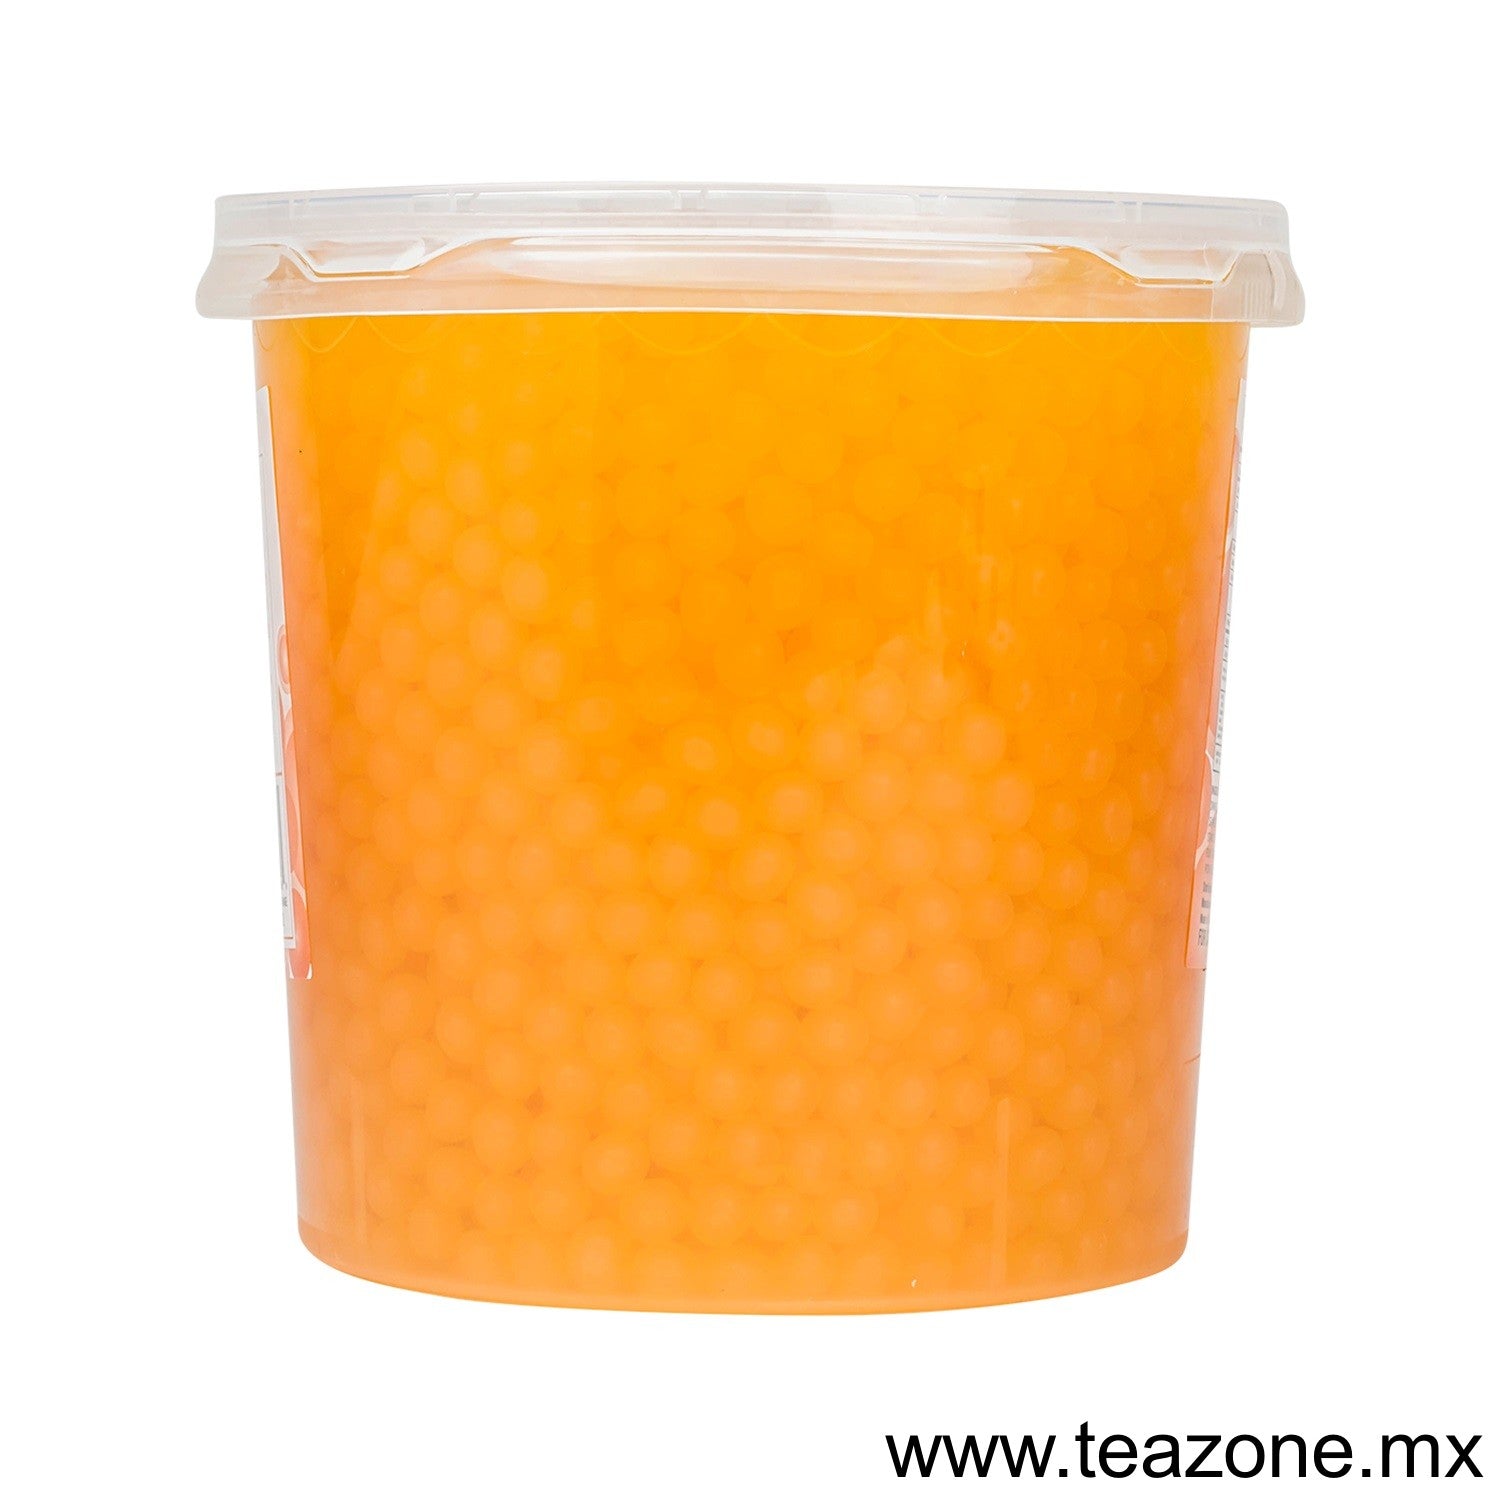 Naranja - Perlas Explosivas Tea Zone